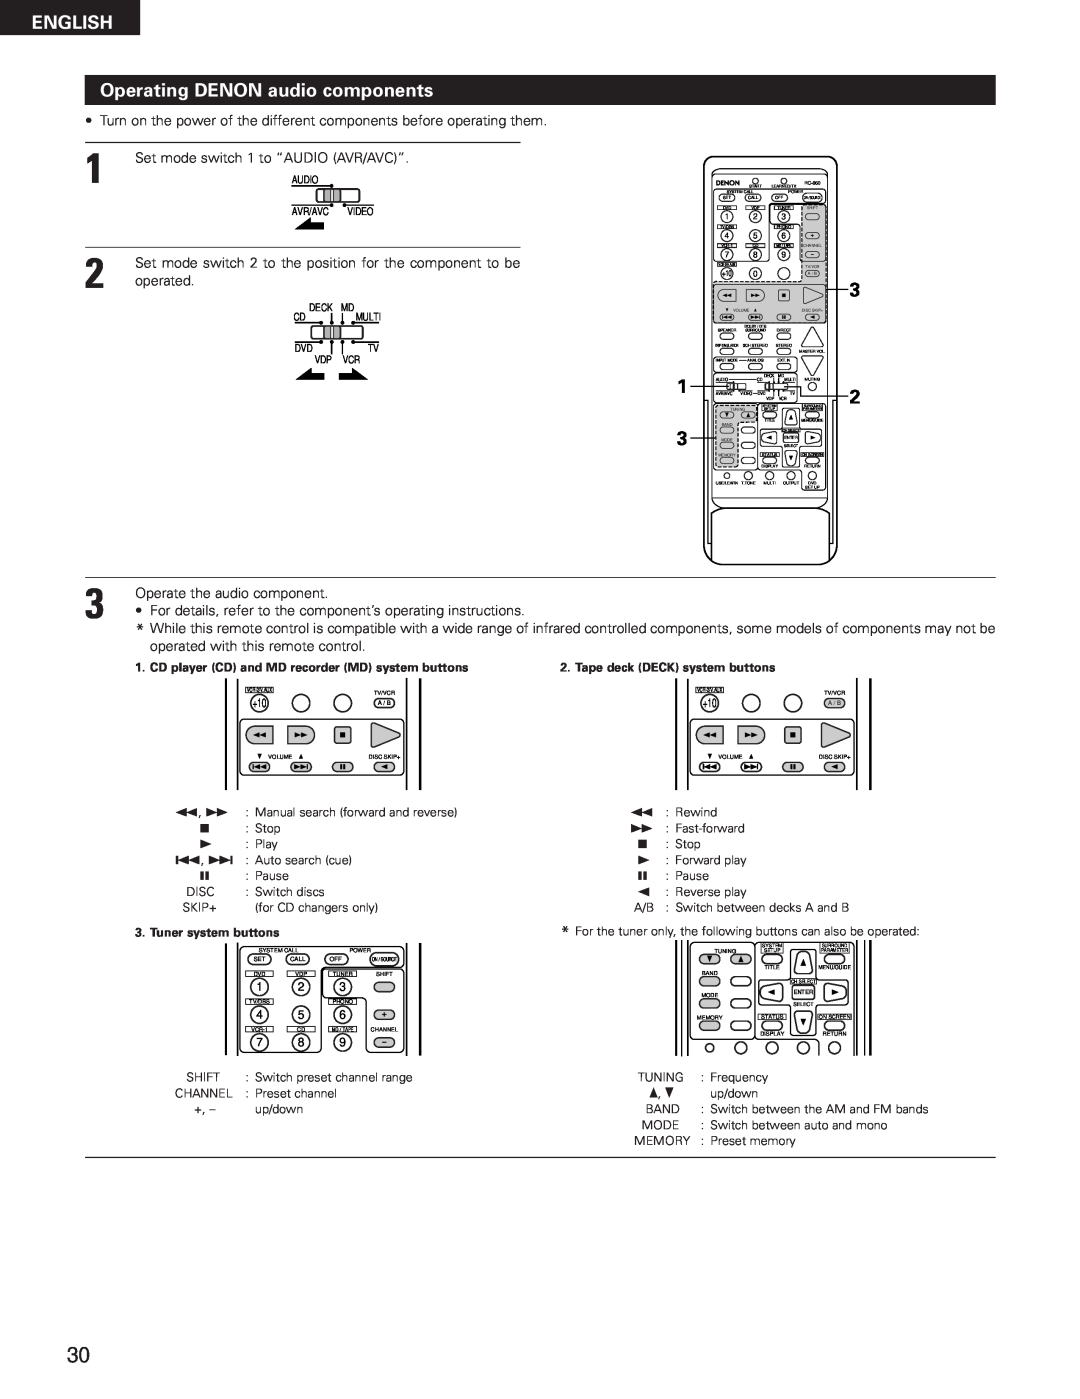 Denon AVR-3300 manual ENGLISH Operating DENON audio components 